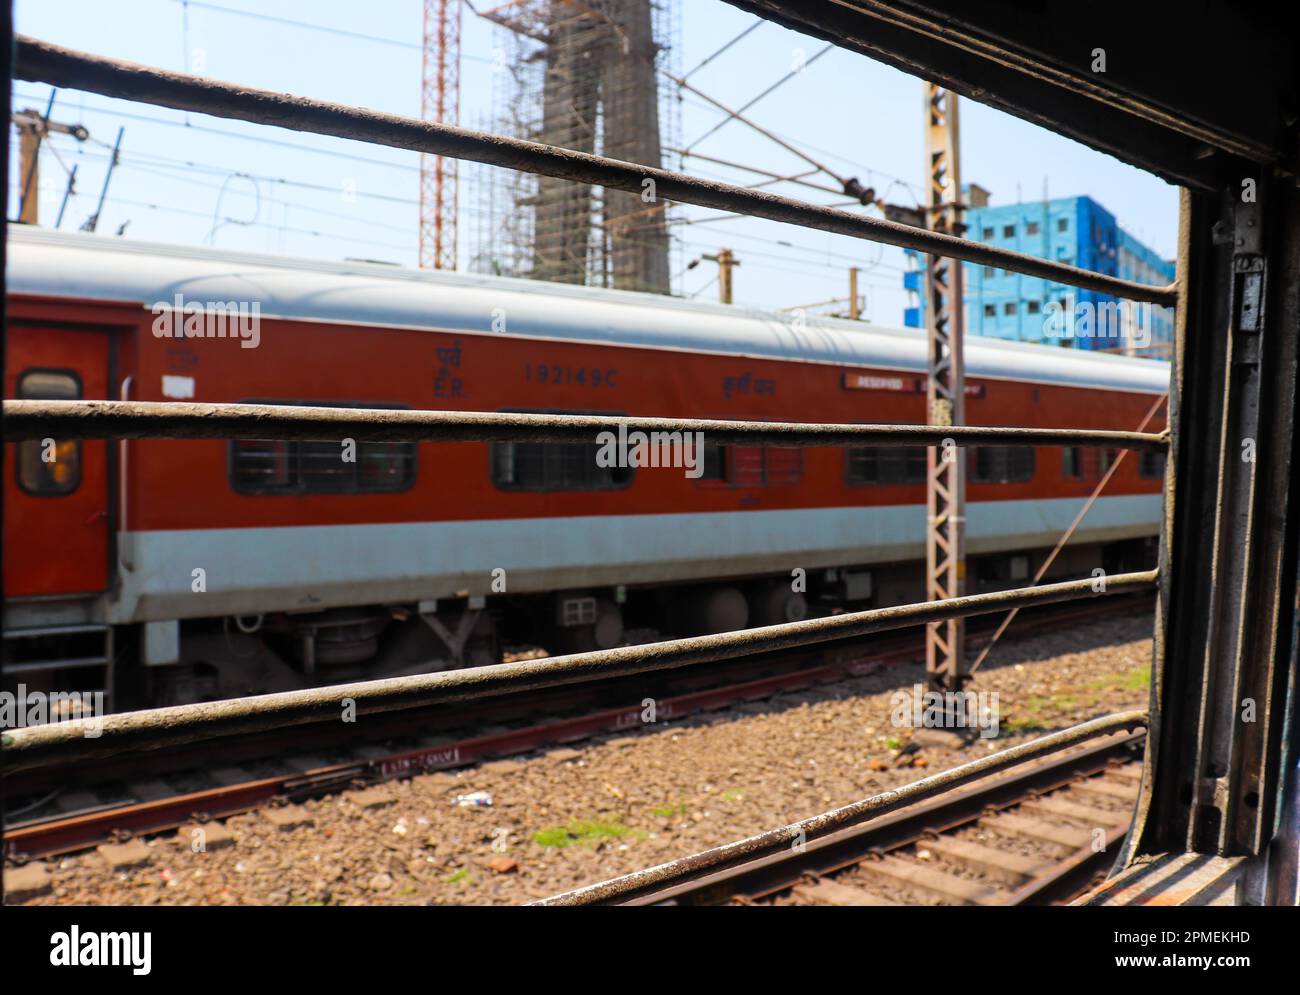 Train indien d'un autre train. Magnifique train indien de couleur rouge pour voyager. Banque D'Images